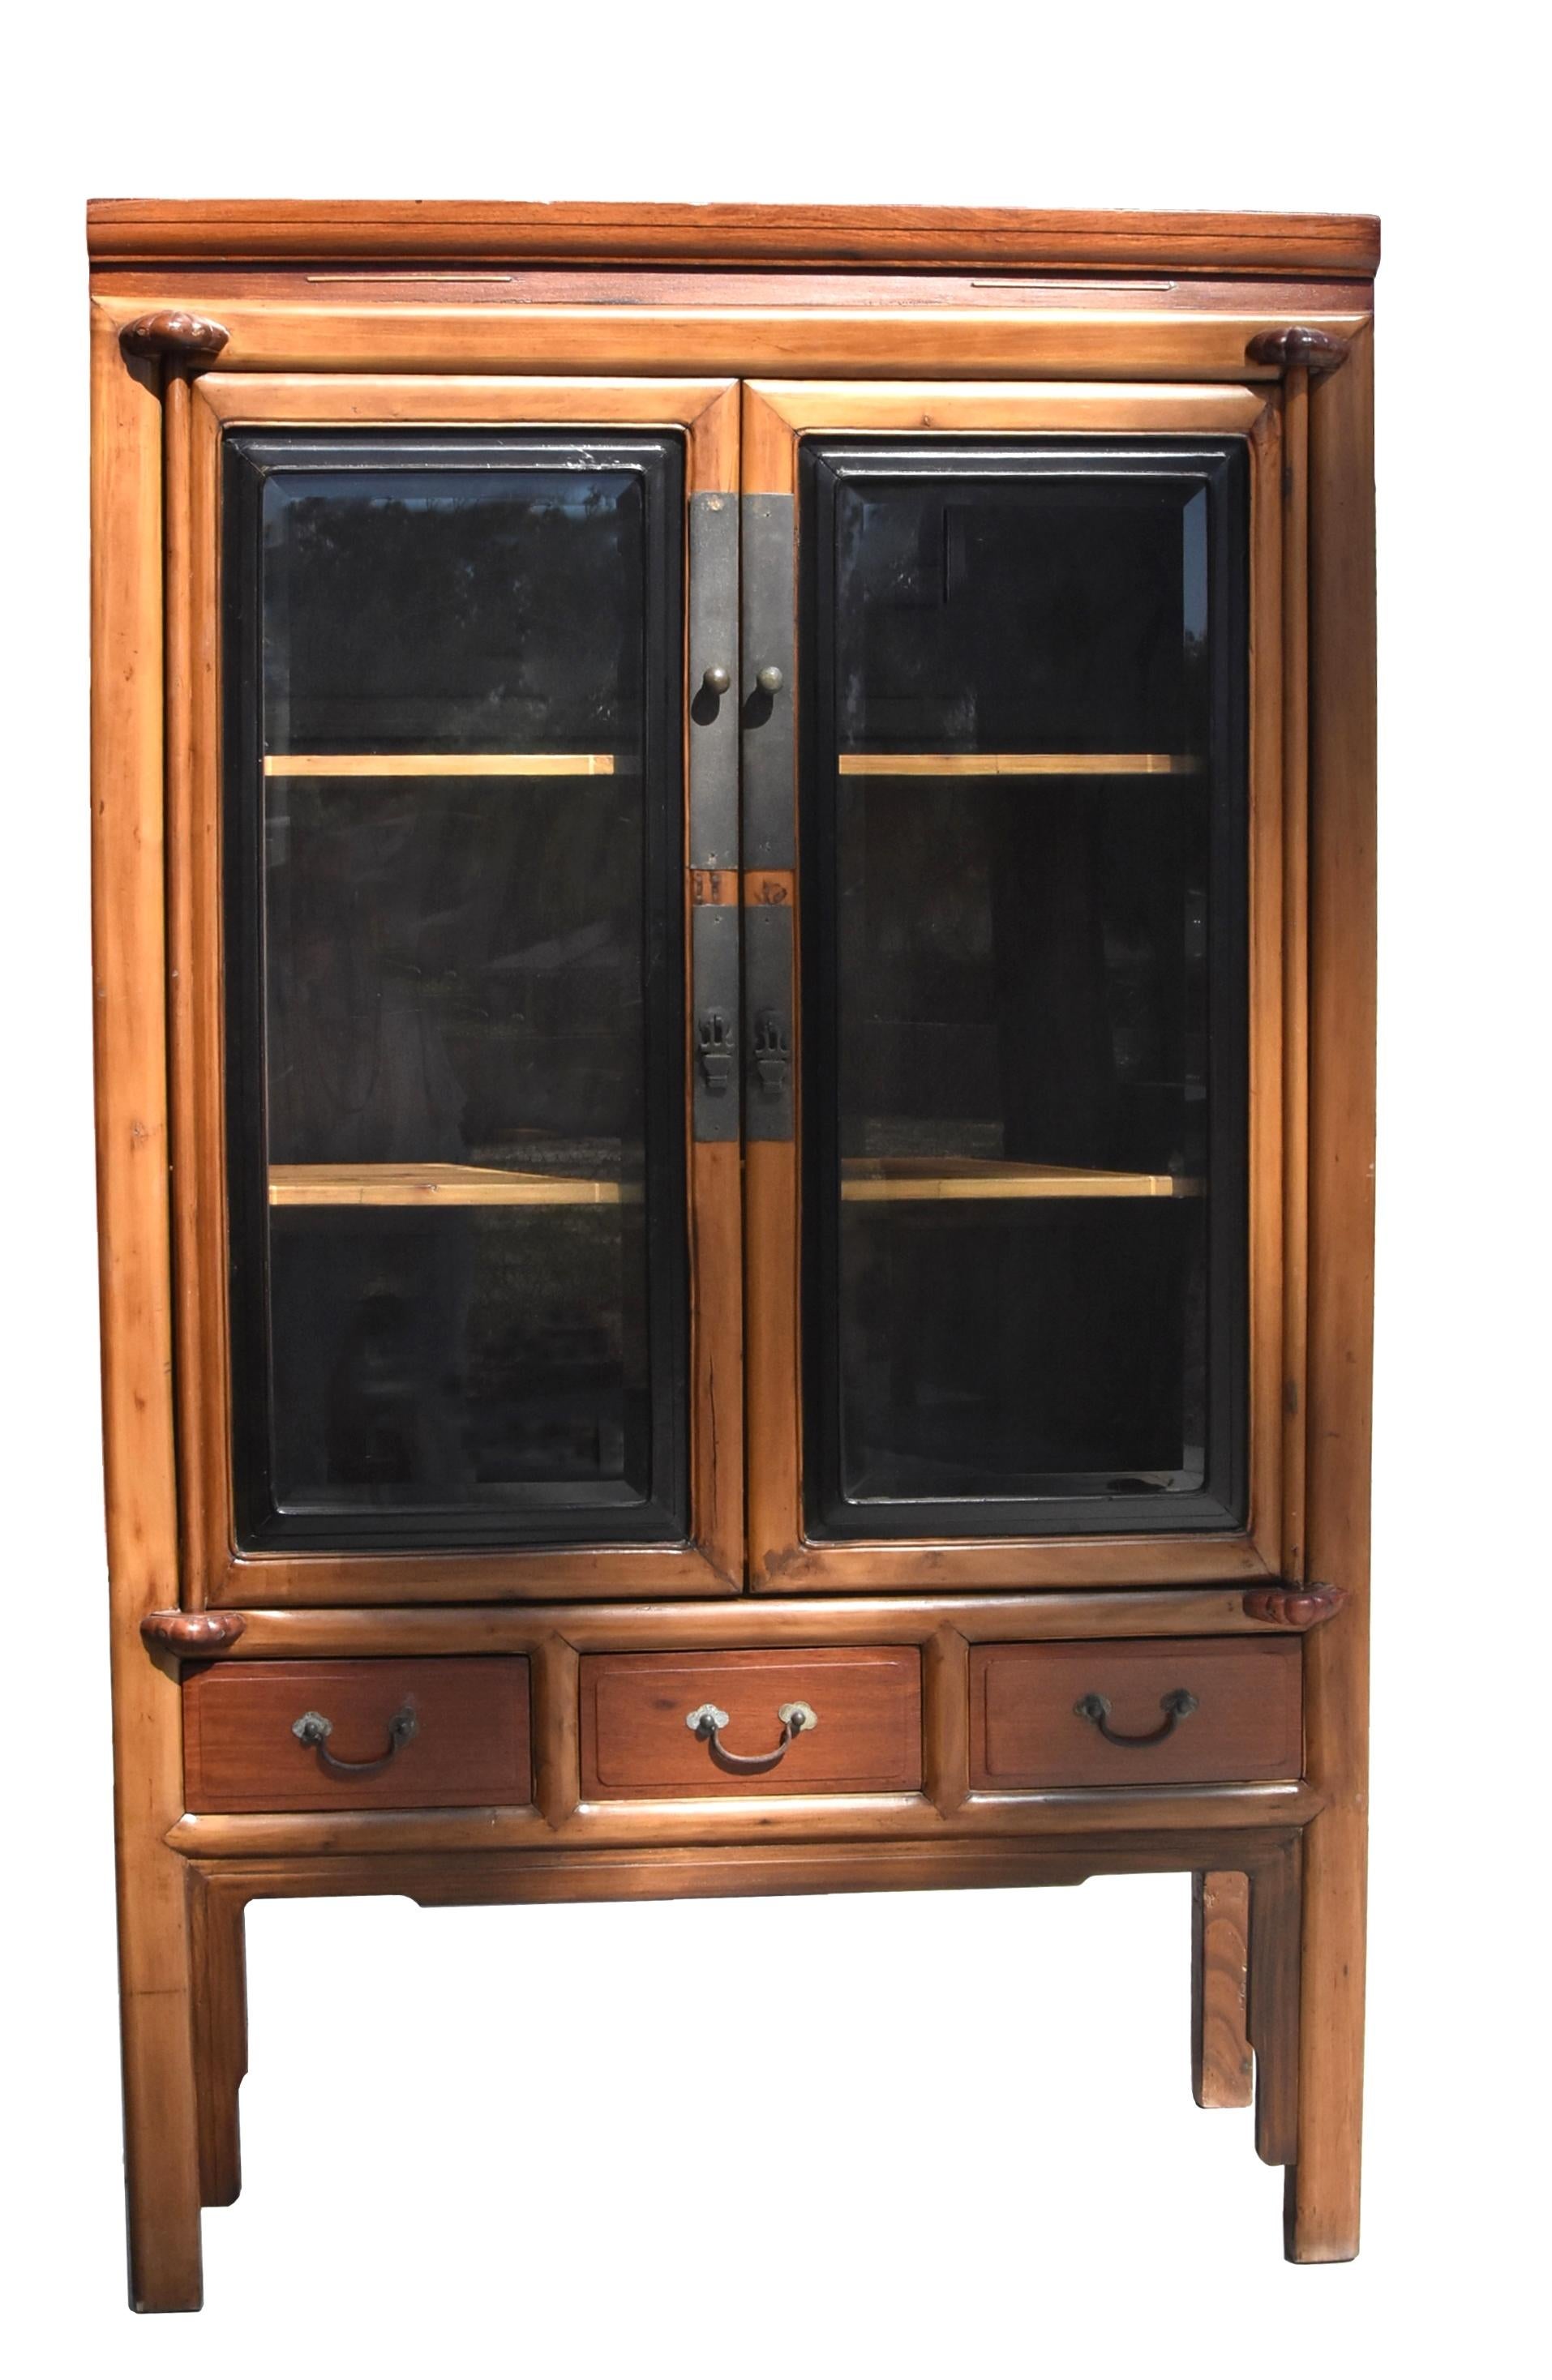 Ein chinesischer Gelehrtenschrank aus Massivholz aus dem späten 19. Jahrhundert mit Glastüren und herausnehmbaren Einlegeböden. Die Glastüren mit eleganten, schwarz lackierten Rahmen sind auf Dübeln montiert, die mit geschnitzten Lotosblüten